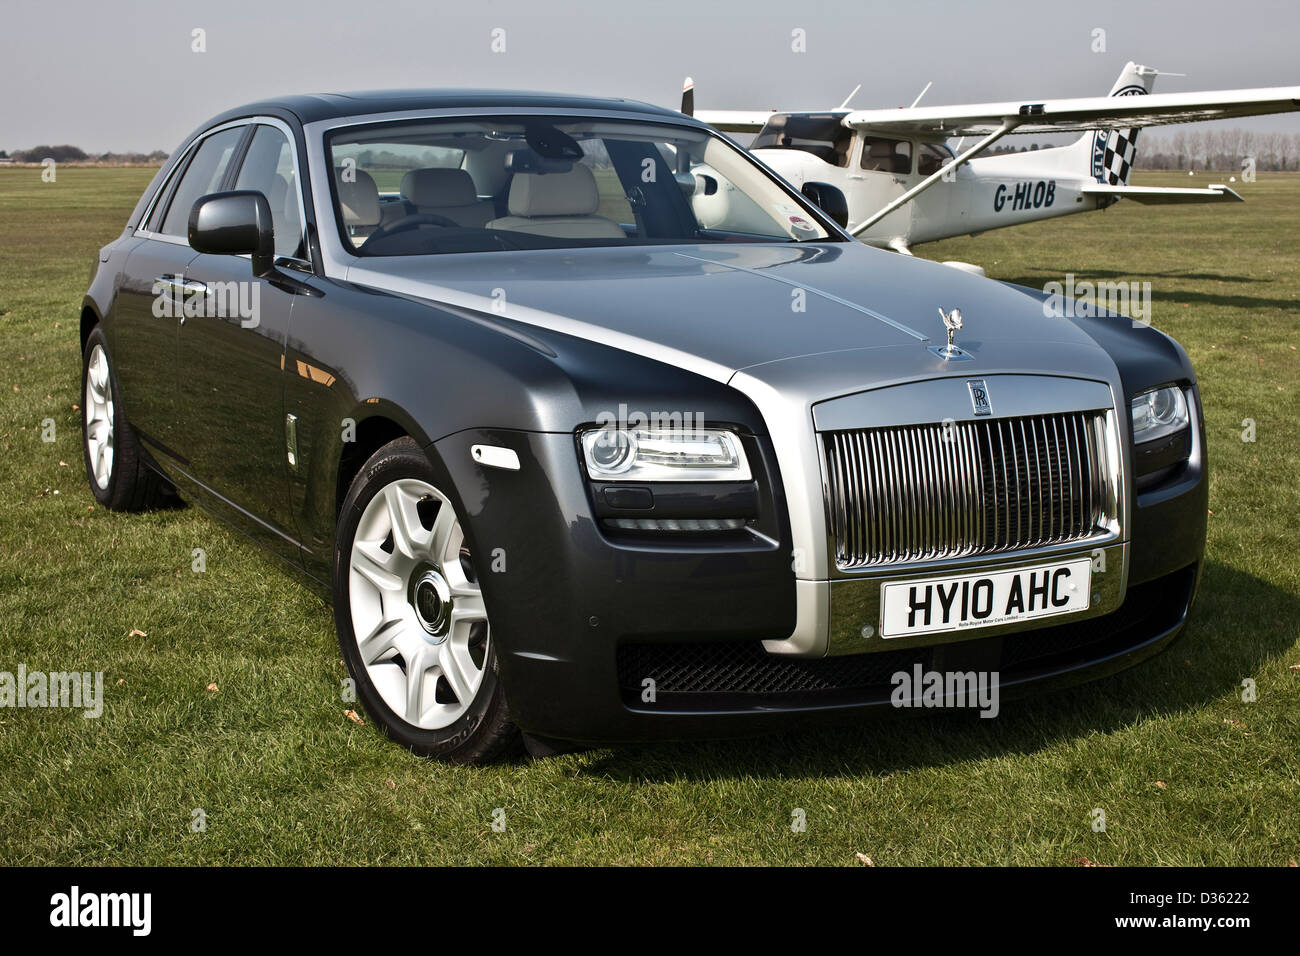 Rolls Royce Ghost berline de luxe, Goodwood, UK, 15 04 2010 Banque D'Images